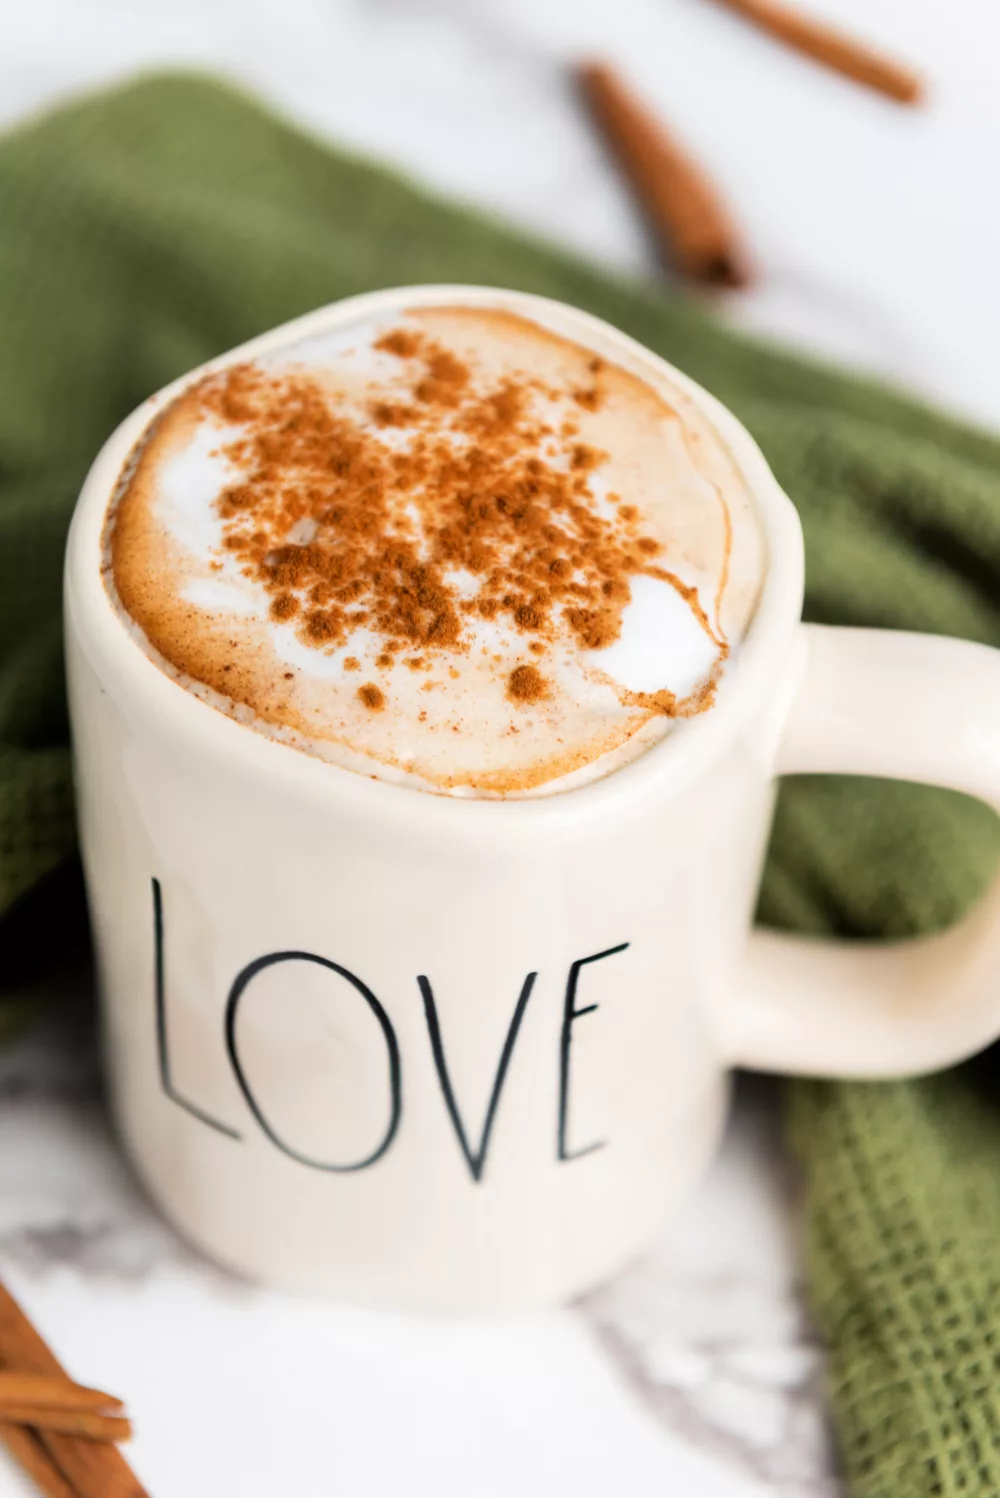 Valentine Latte Ideas: A Maple Cinnamon Latte Recipe